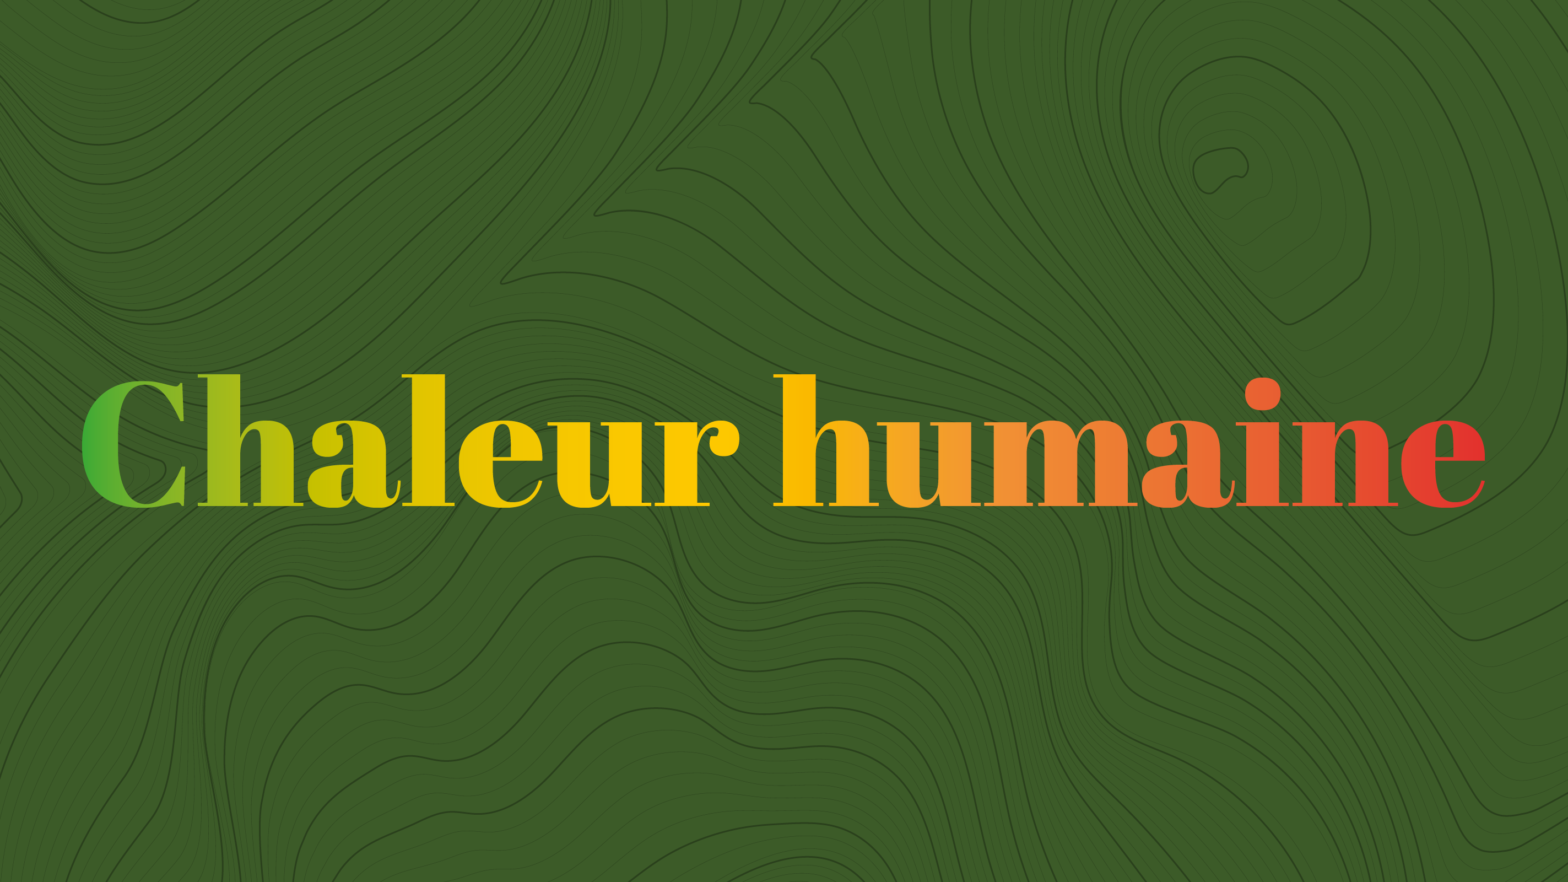 « Chaleur humaine », la nouvelle conférence chantée Mélomanes !